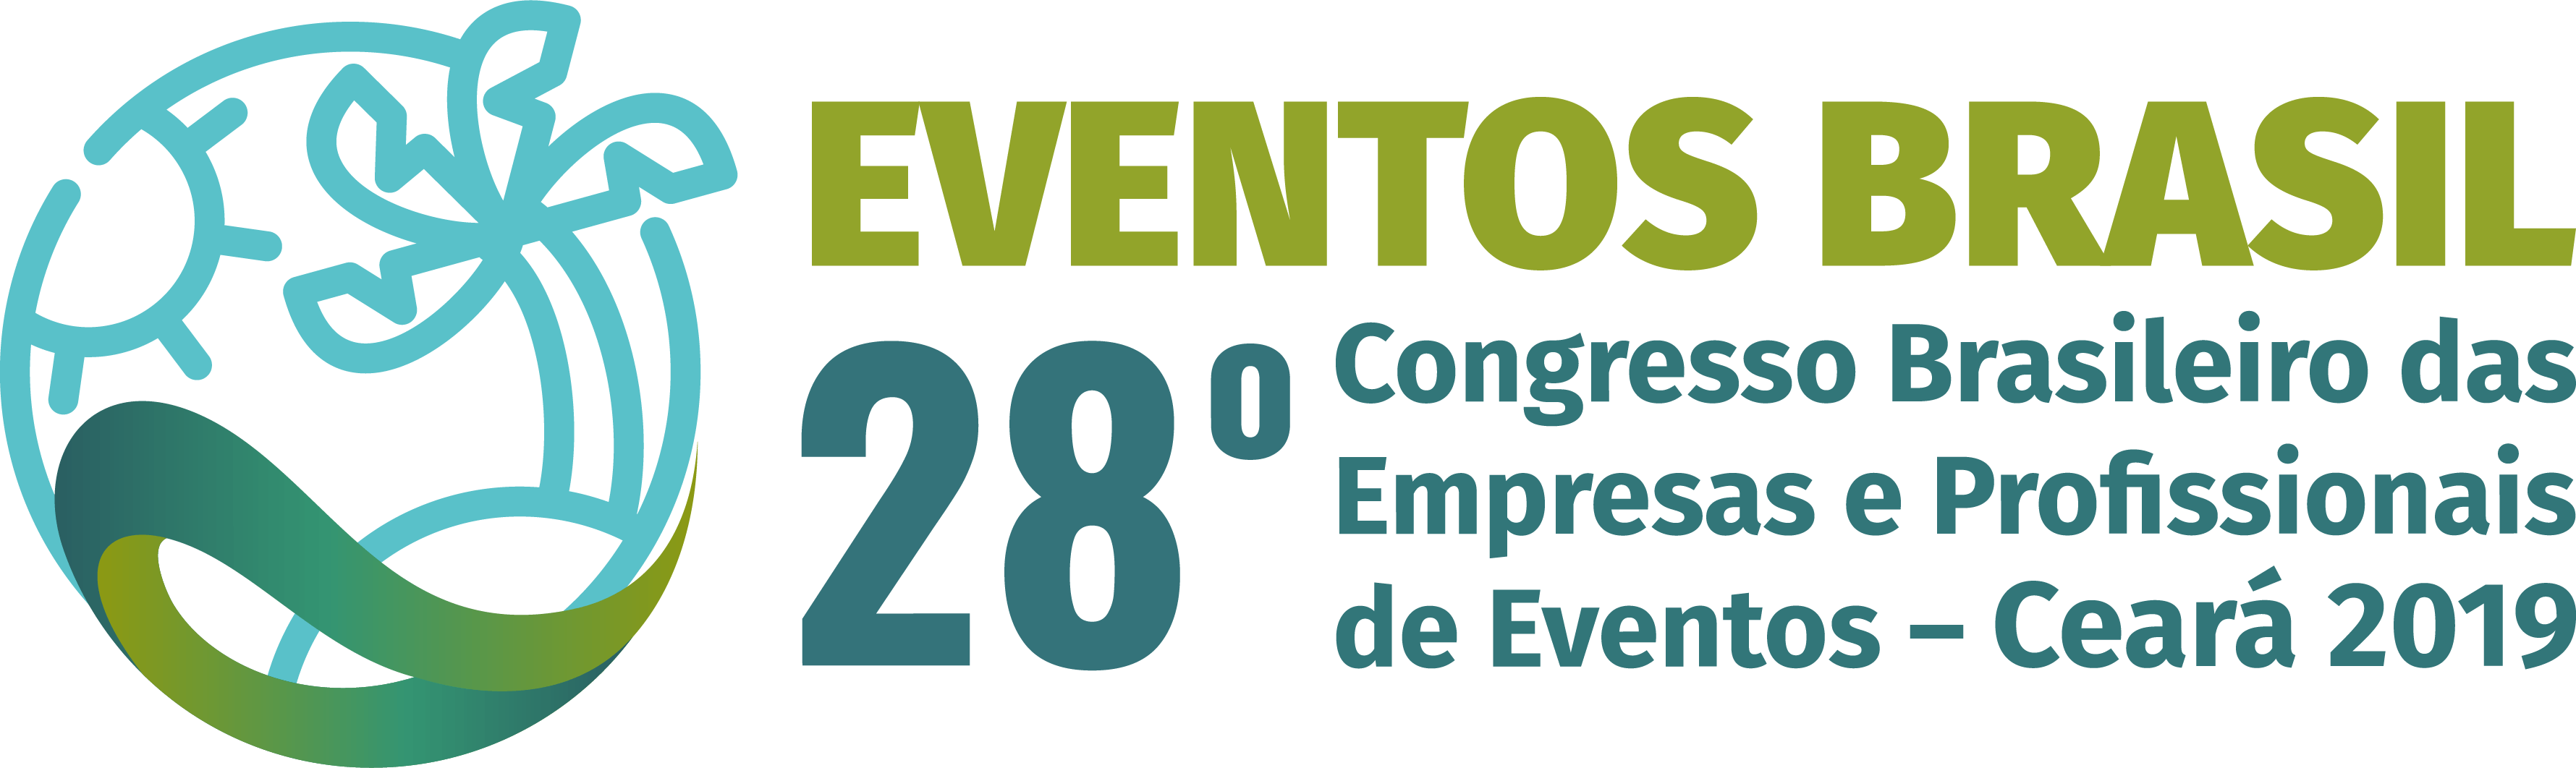 28° Congresso Brasileiro das Empresas e Profissionais de Eventos